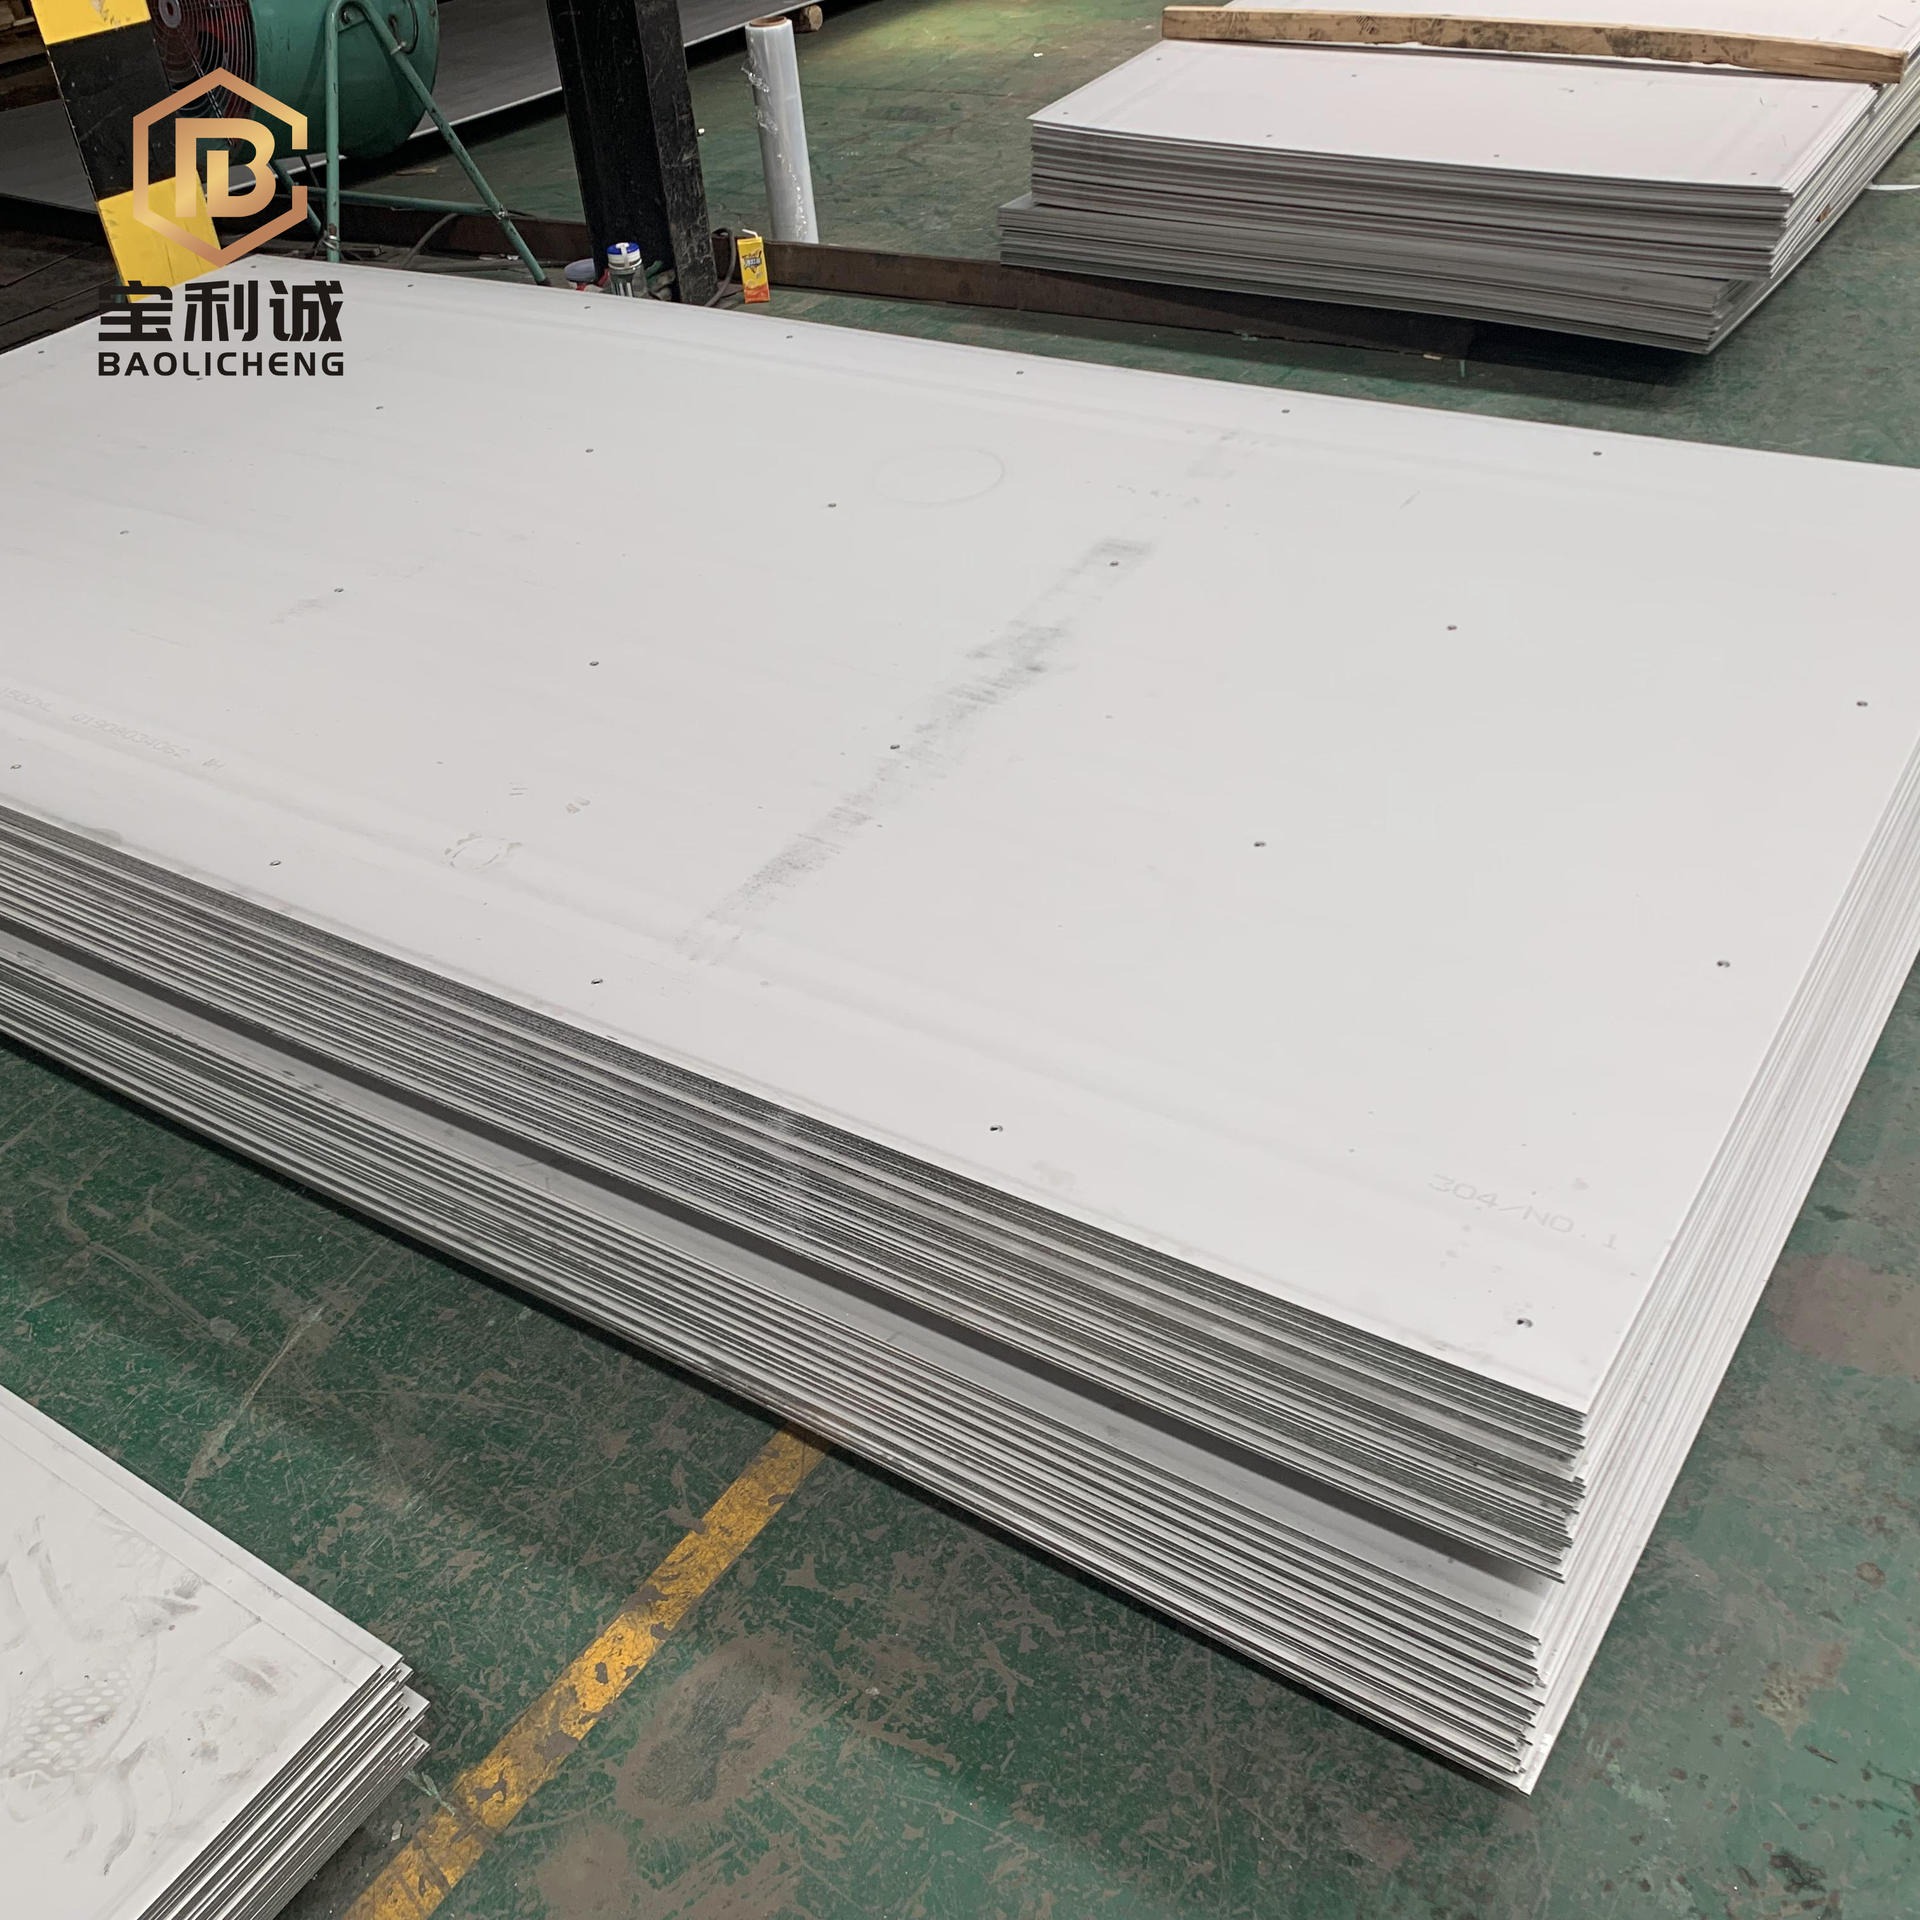 厂家直销2507不锈钢板 不锈钢板加工定制 耐酸碱不锈钢板免费拿样